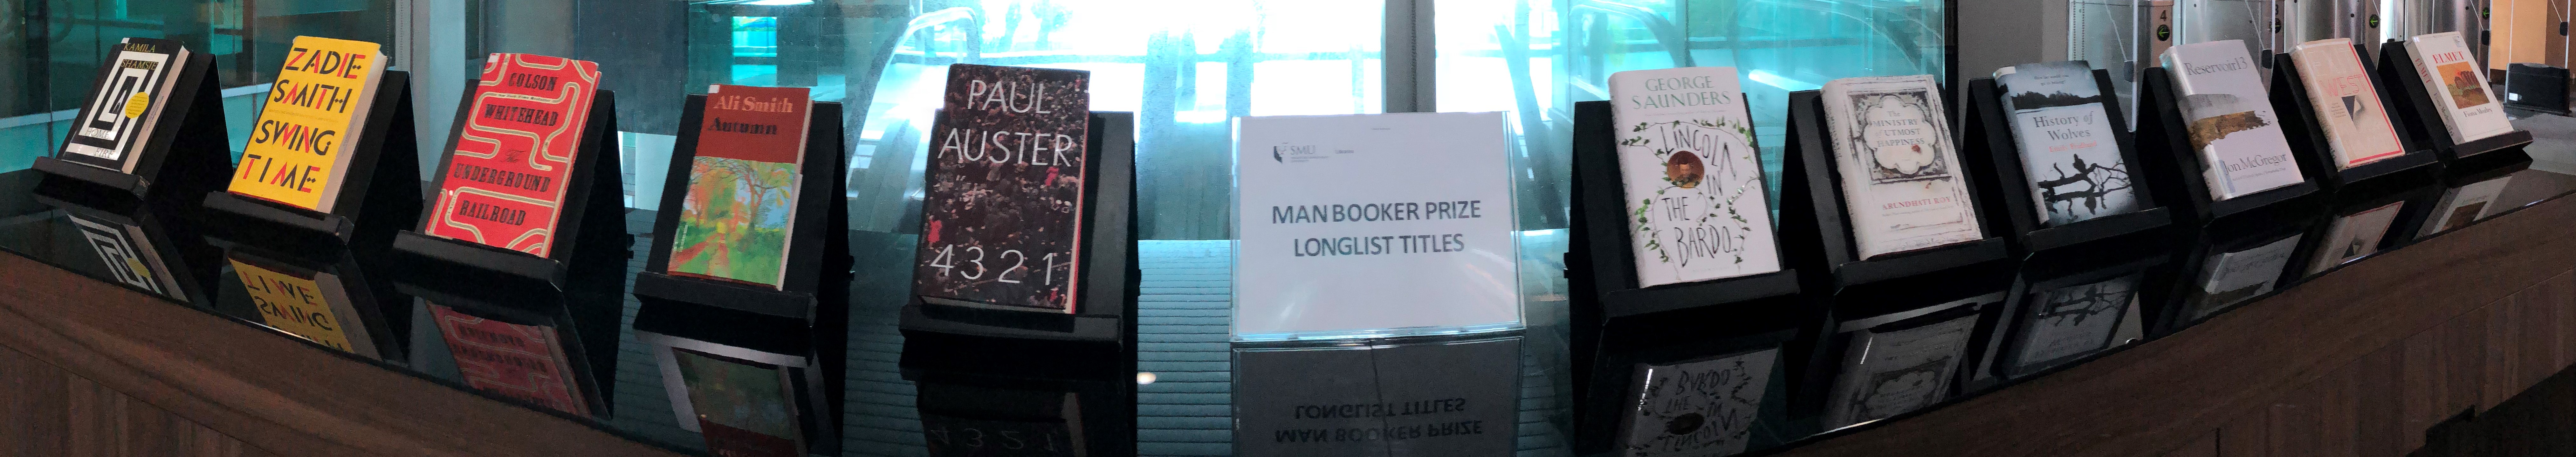 Man Booker Prize 2017 Longlist